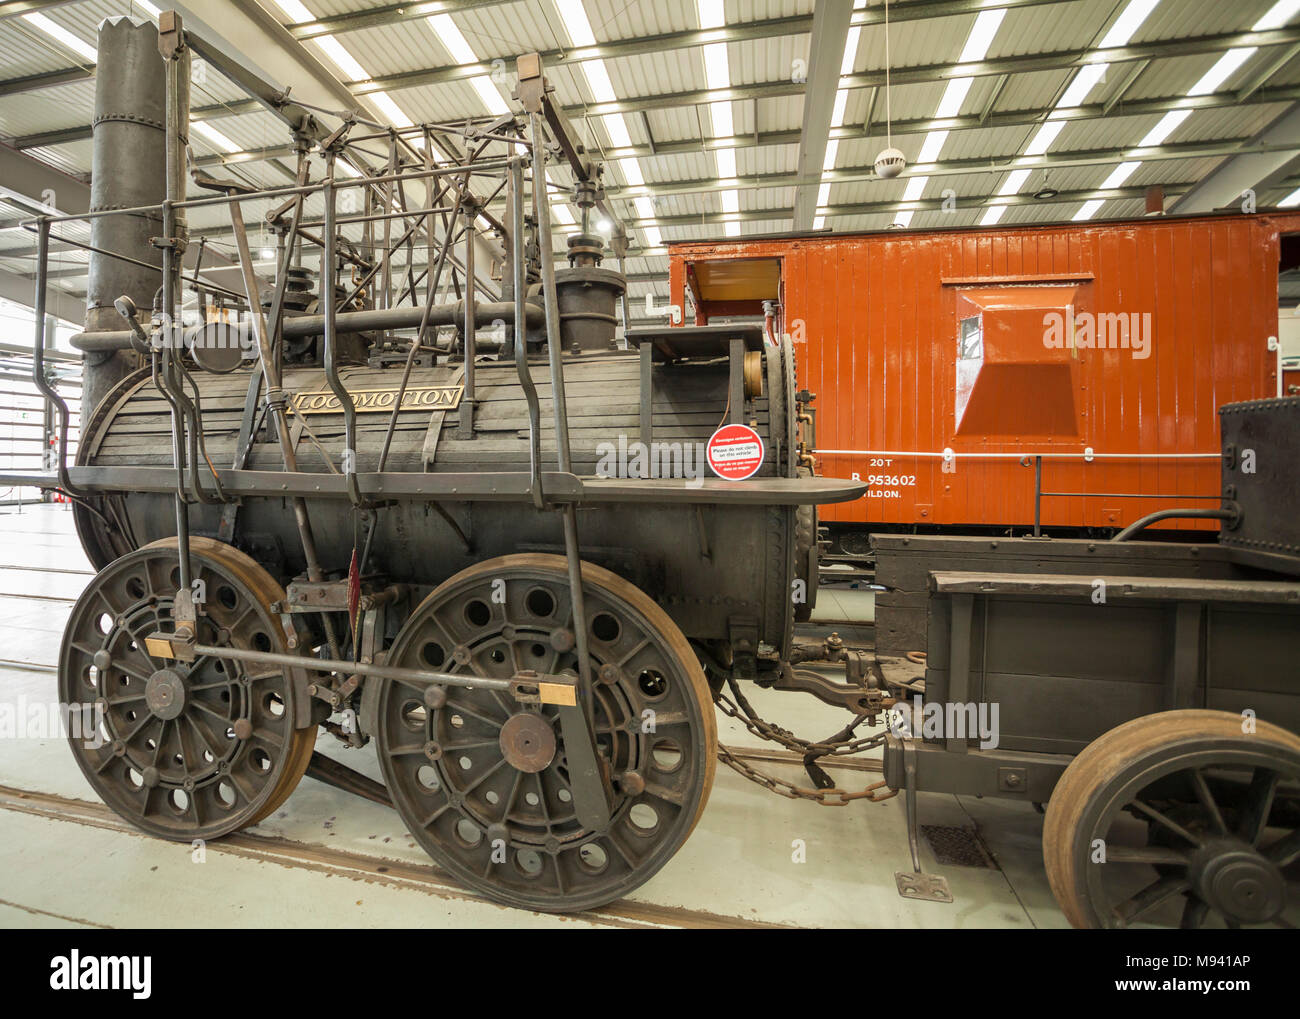 Locomotion, National Railway Museum,Shildon,Co.Durham,England,UK Stock Photo